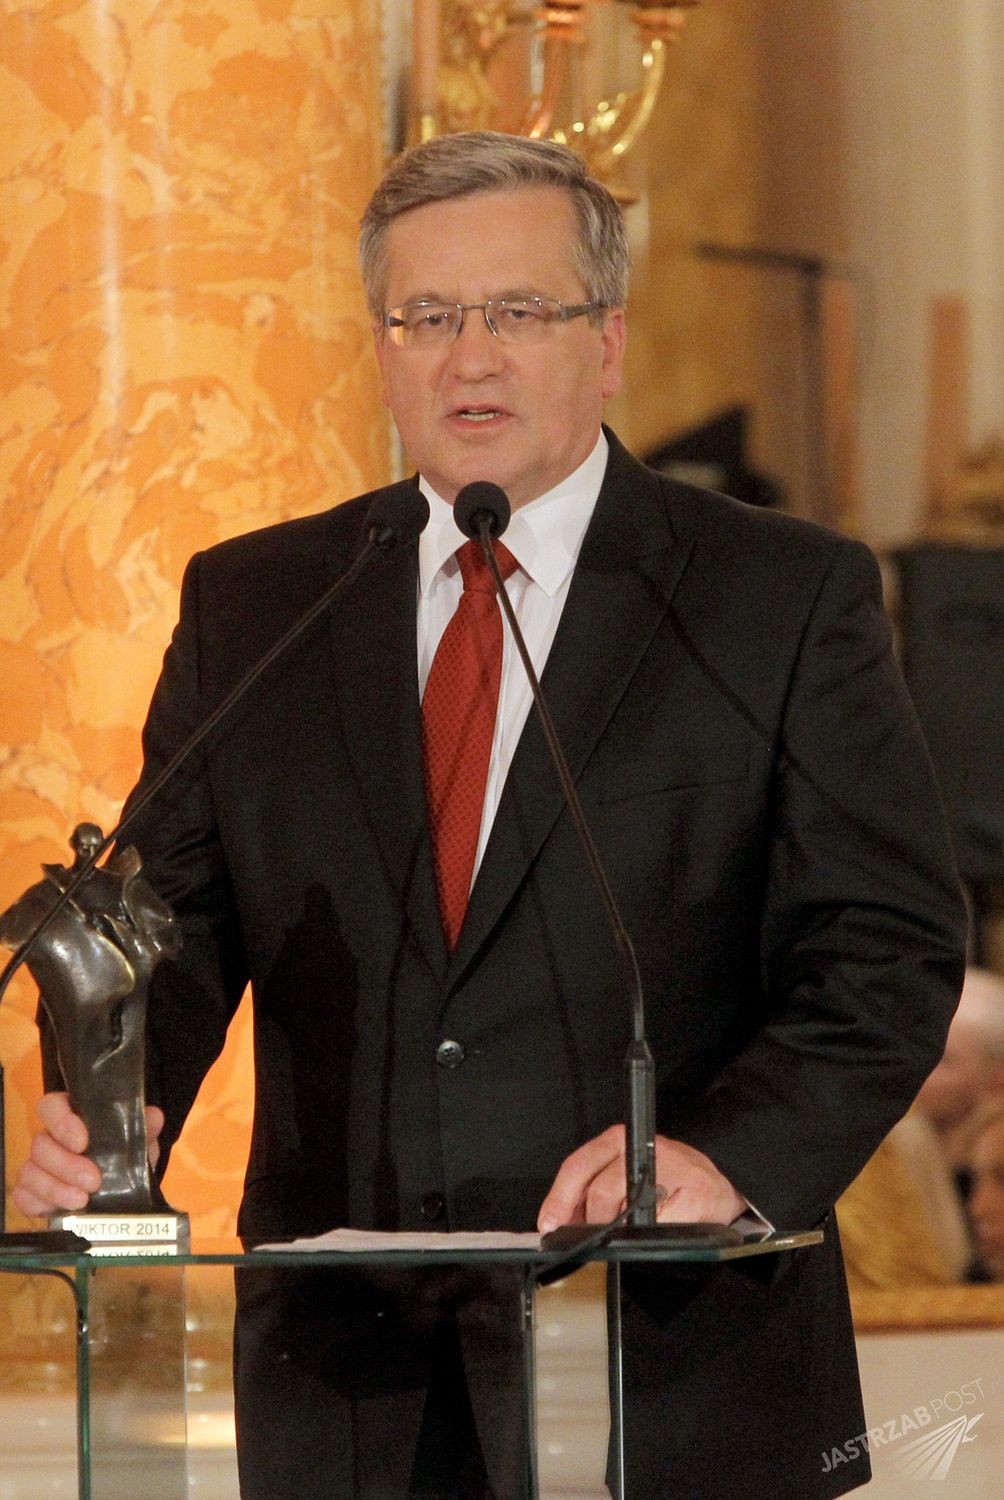 Debata 2015 - Bronisław Komorowski